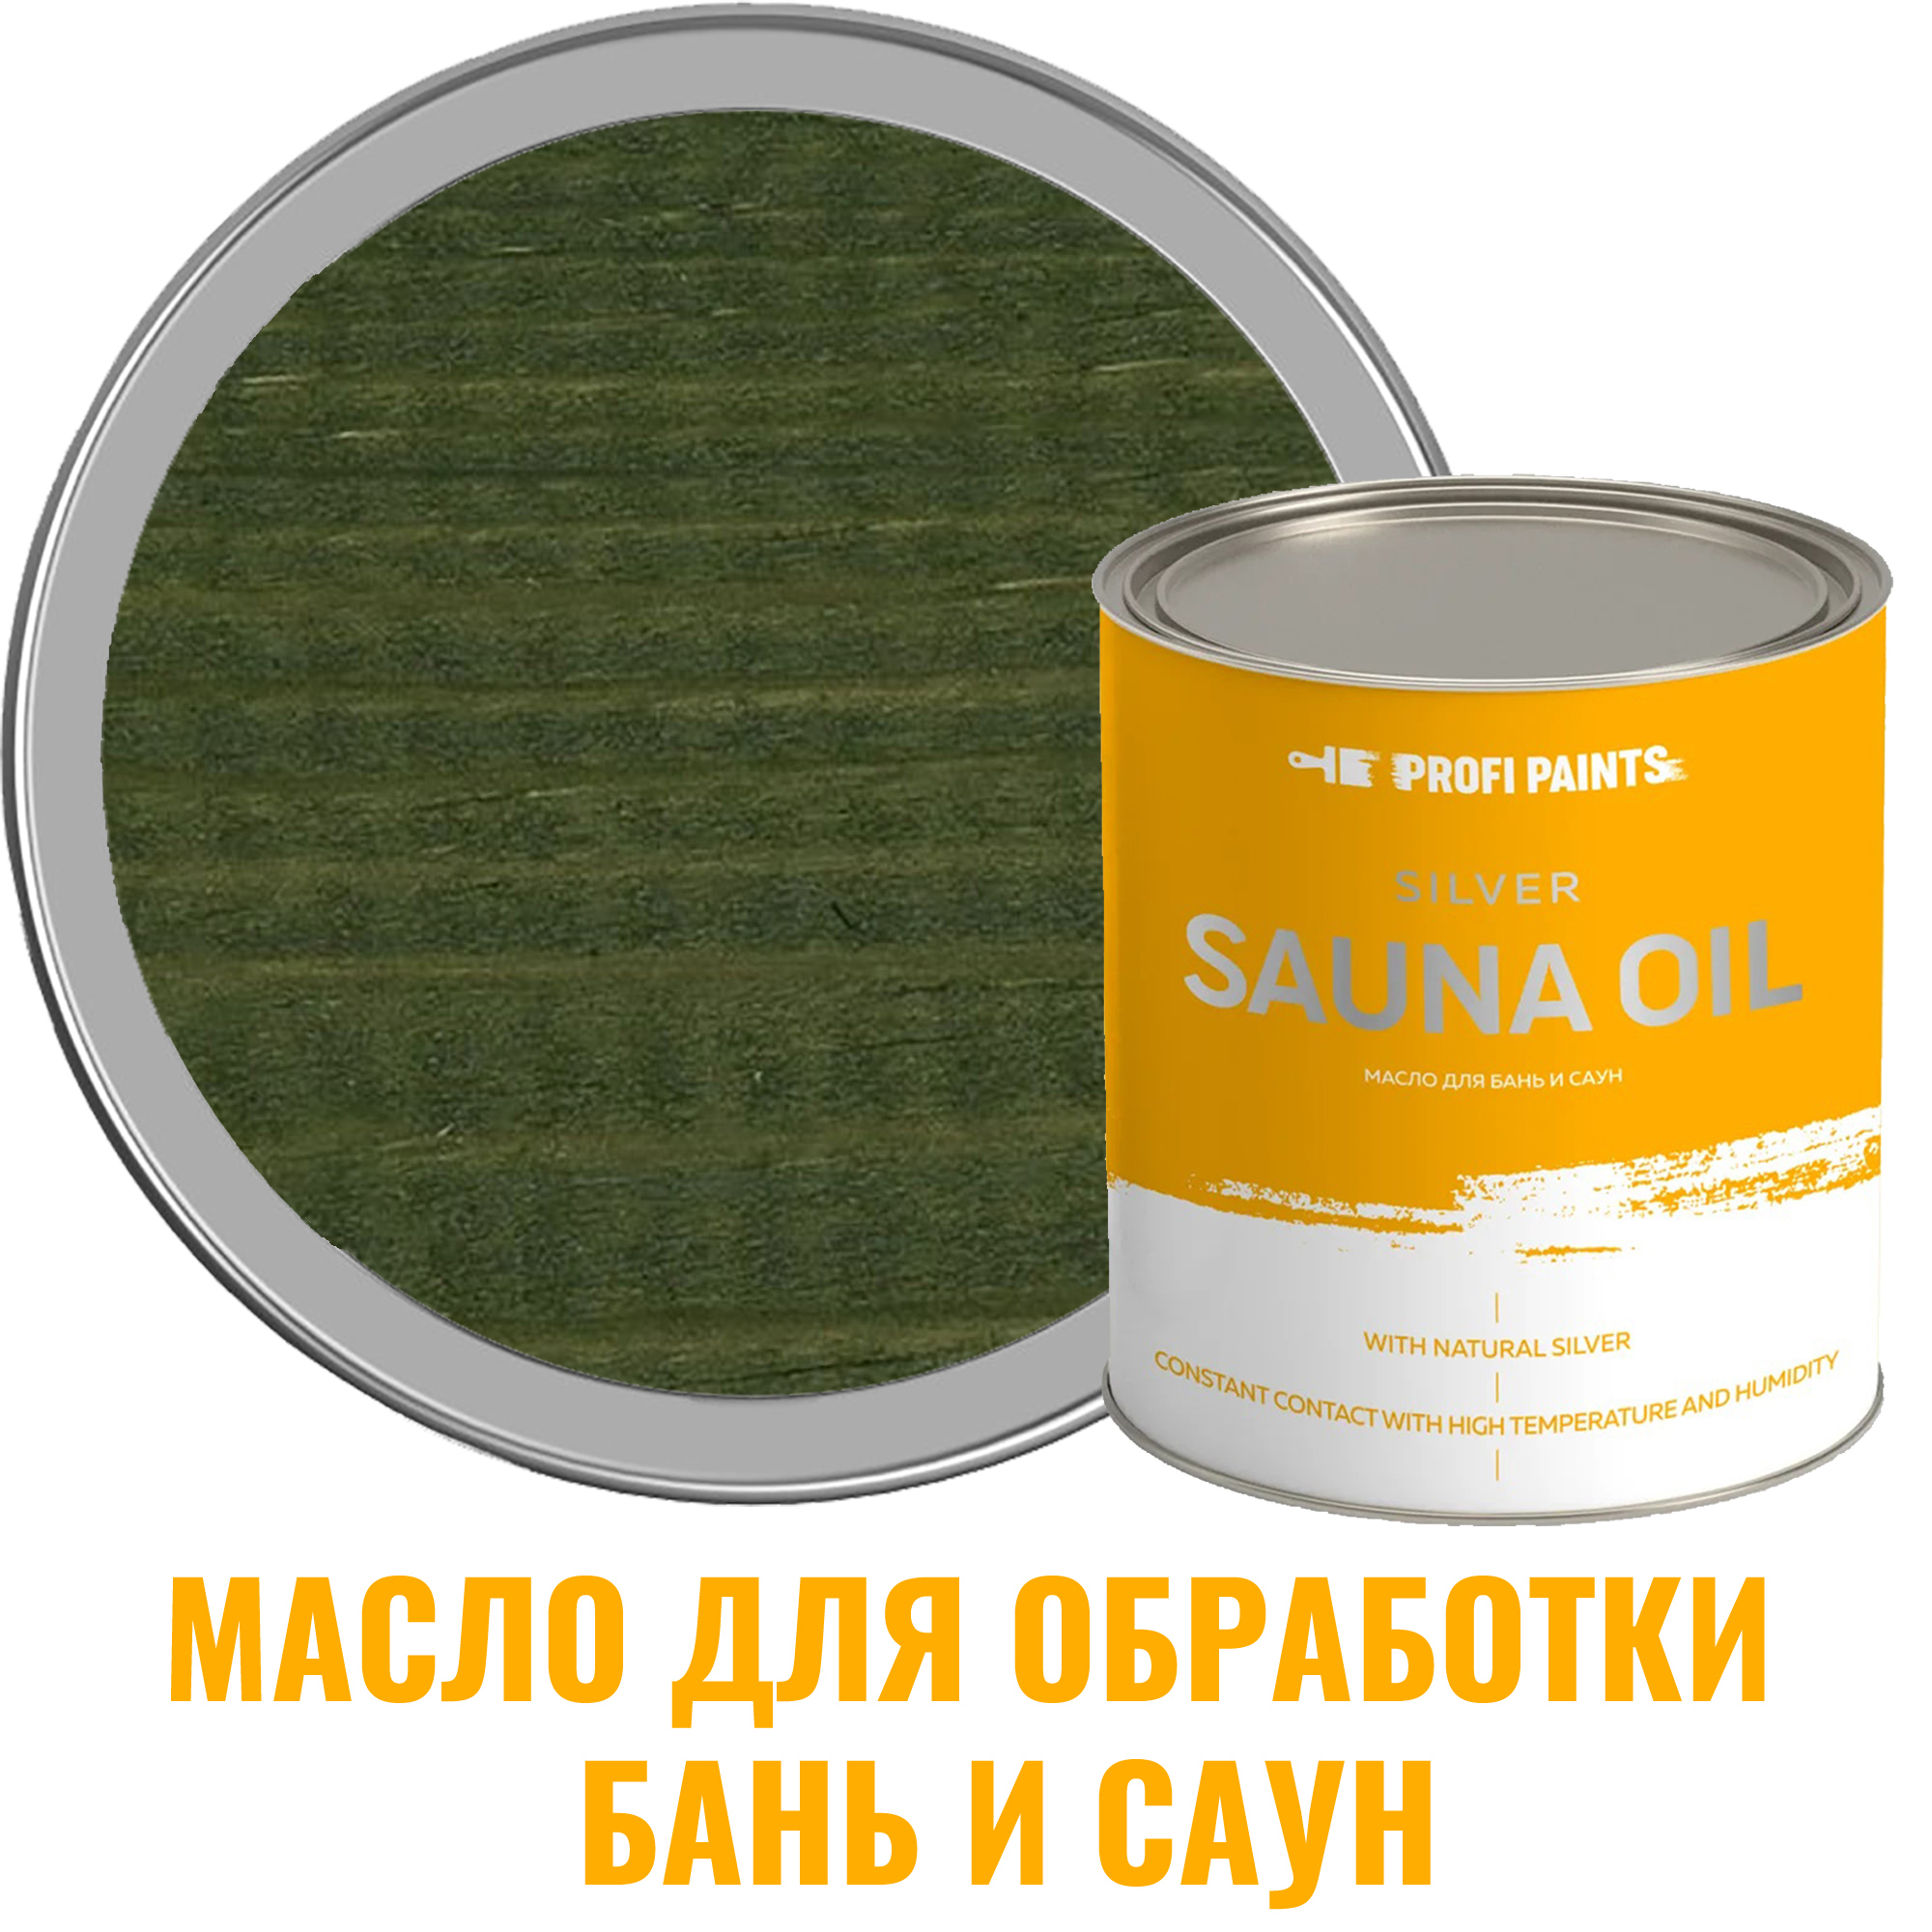 91095368 Масло для бань и саун 10807_D Silver Sauna Oil цвет зеленый 2.7 л STLM-0481729 PROFIPAINTS